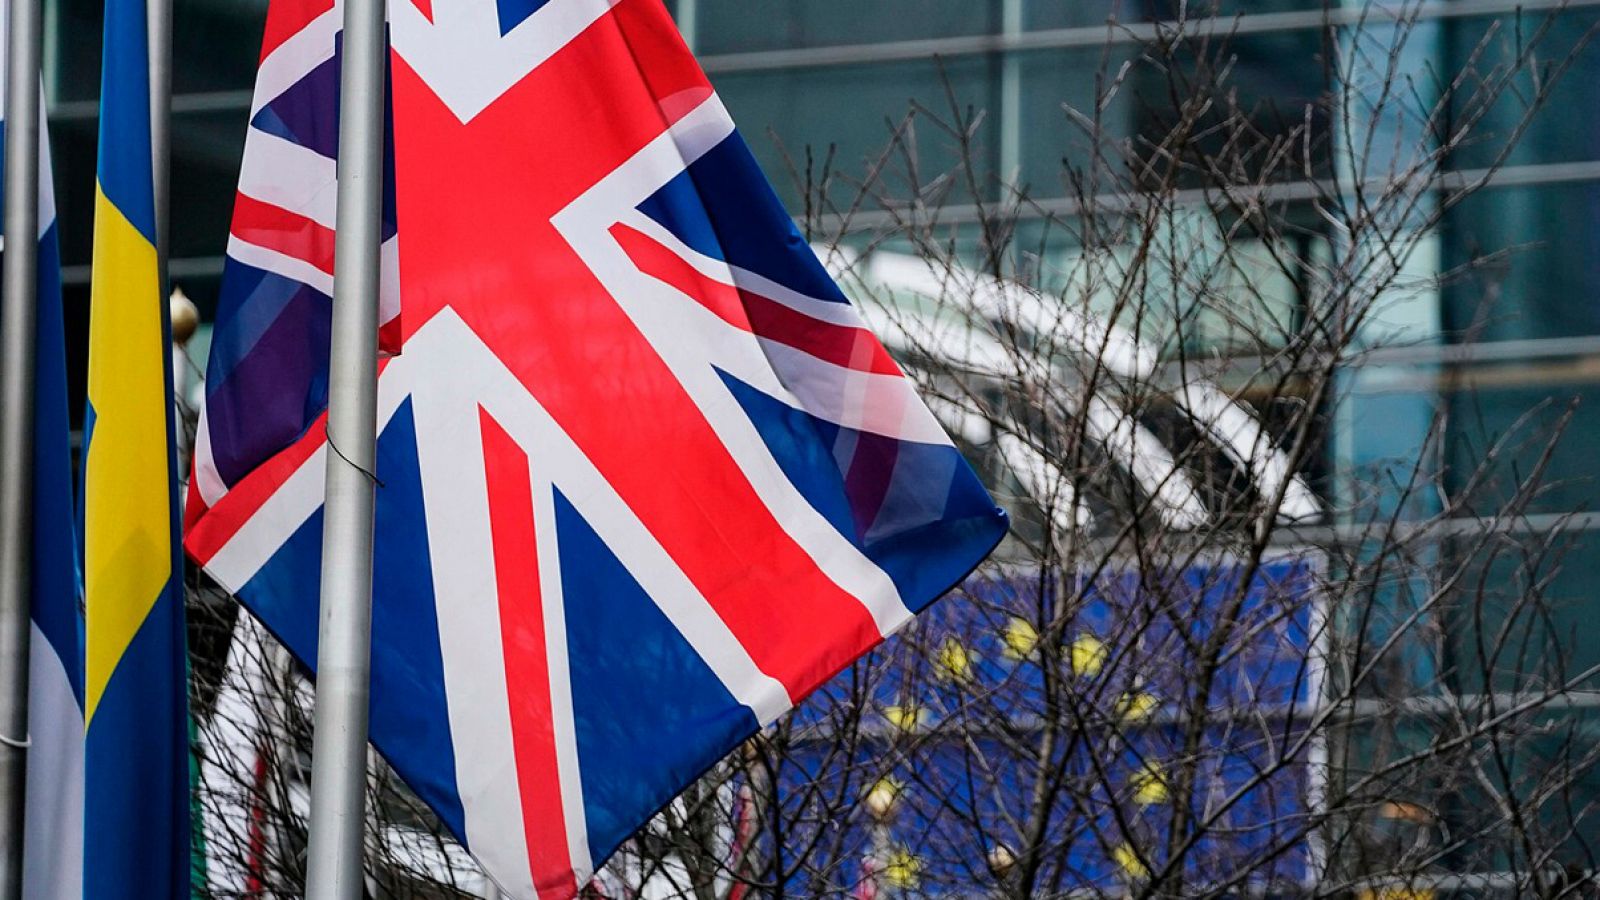 La bandera del Reino Unido frente al Parlamento europeo en Bruselas. Kenzo TRIBOUILLARD / AFP